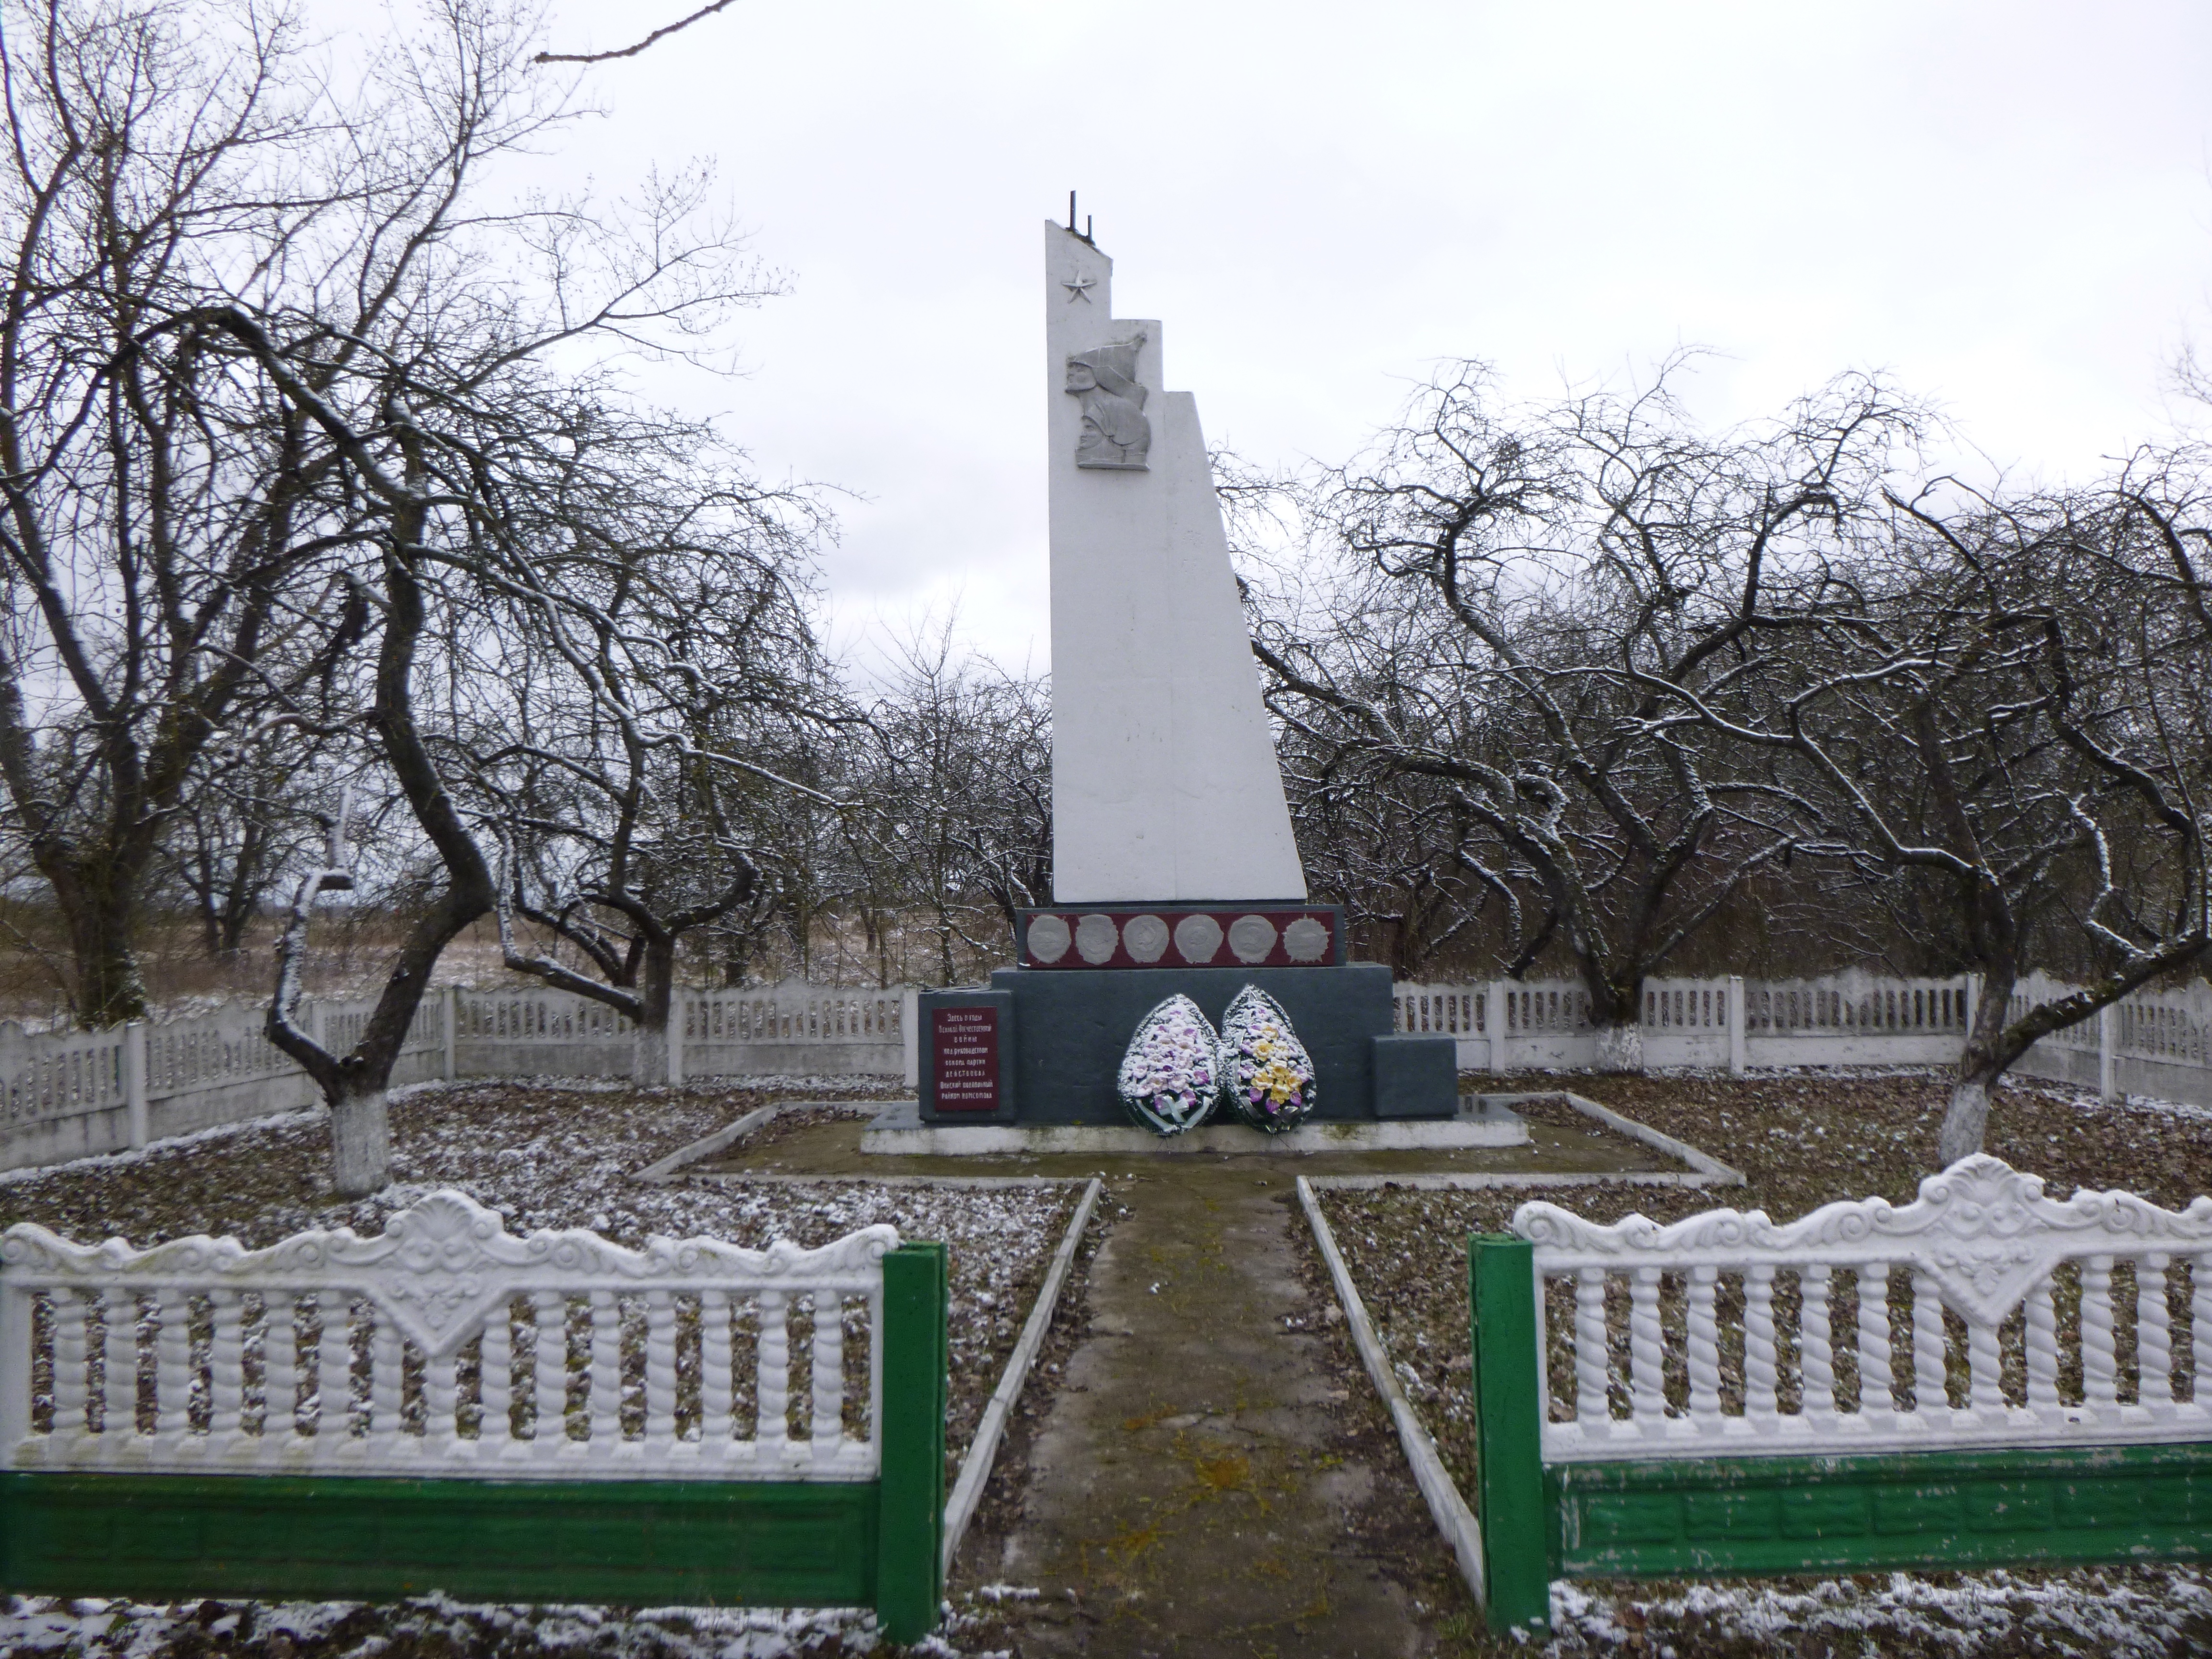 Памятник Землякам, расположенная в д. Площево, Пинский район, Брестская область